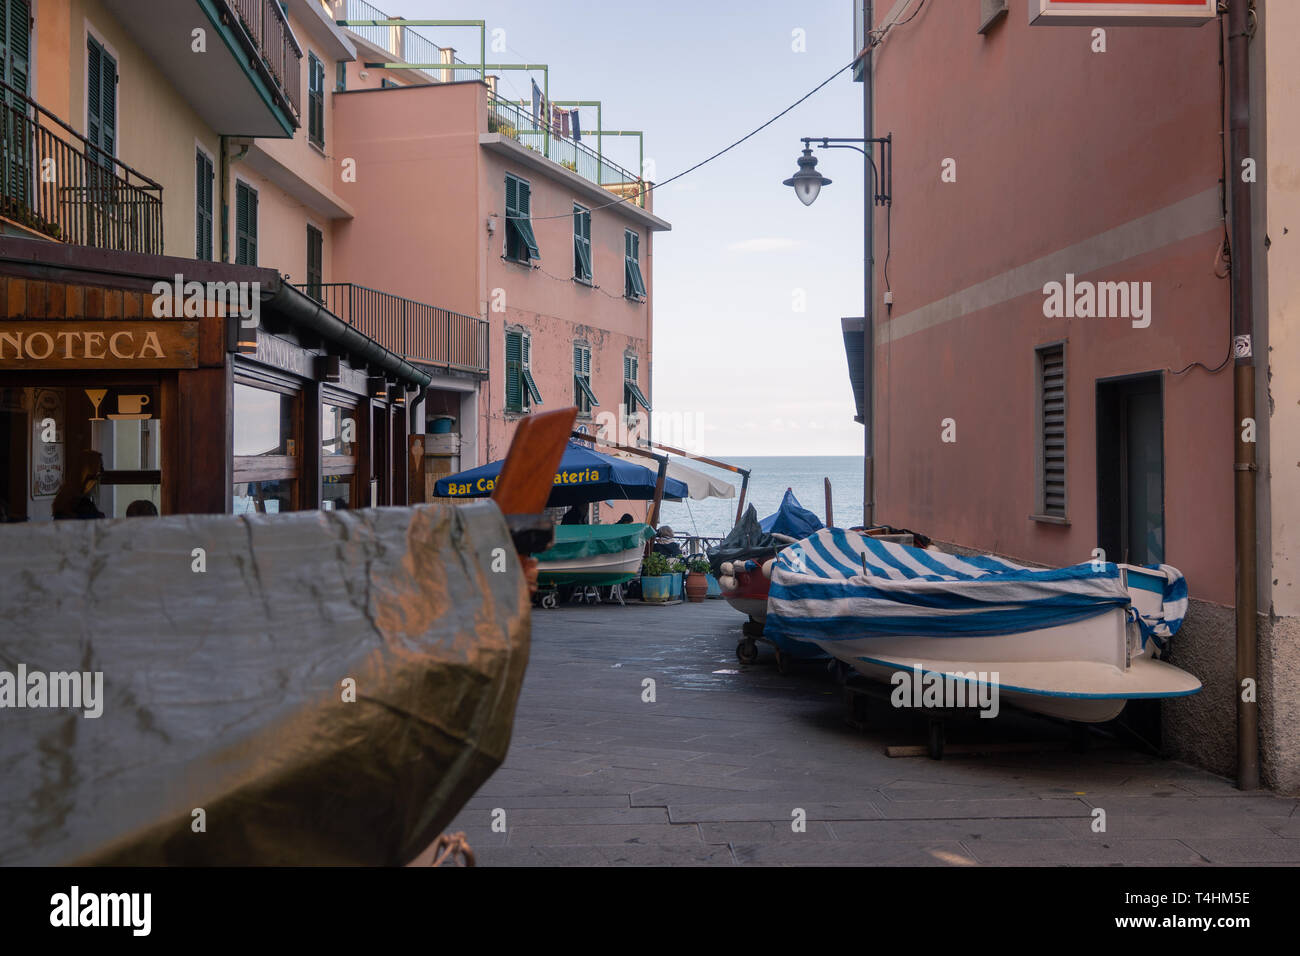 Le barche sono ai lati della strada principale di Manarola, Cinque Terre, Italia Foto Stock